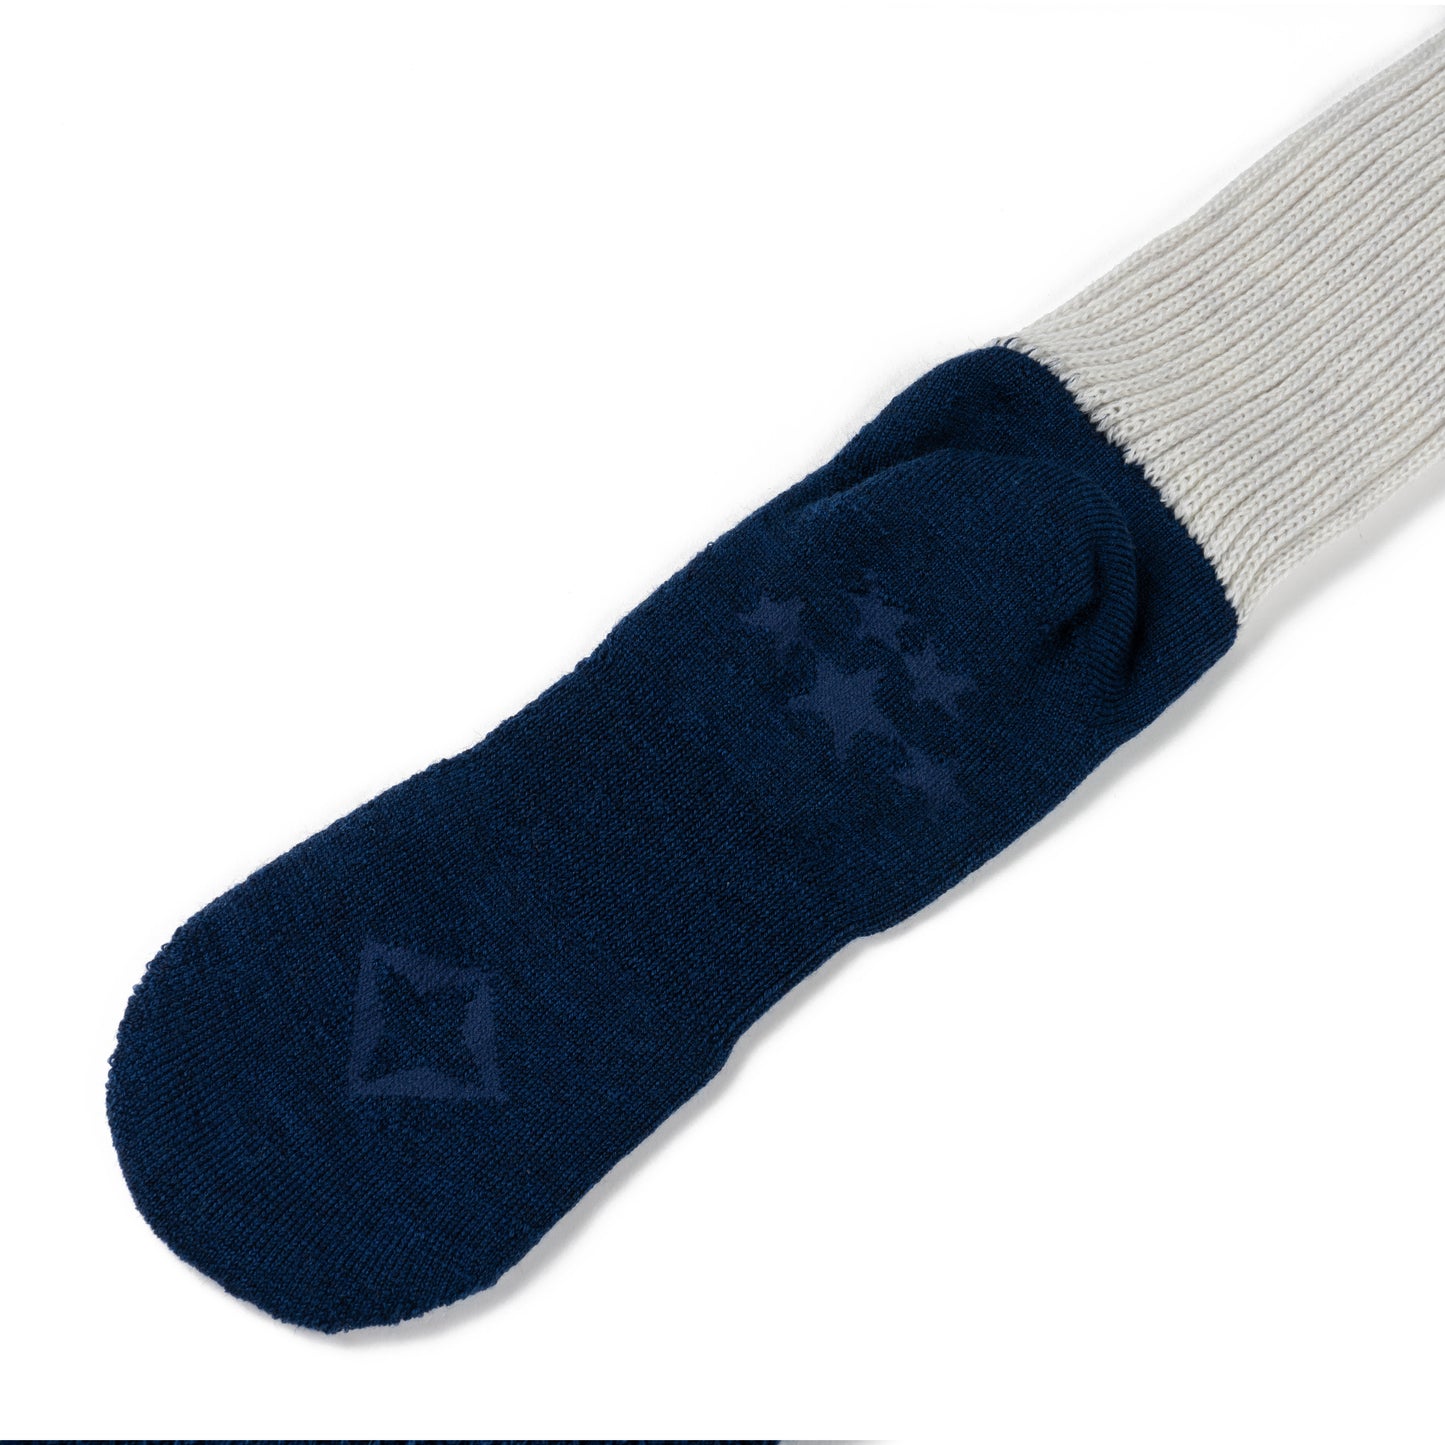 Winiche & Co. × Helinox Wool Slouch Socks - Navy / Light Gray